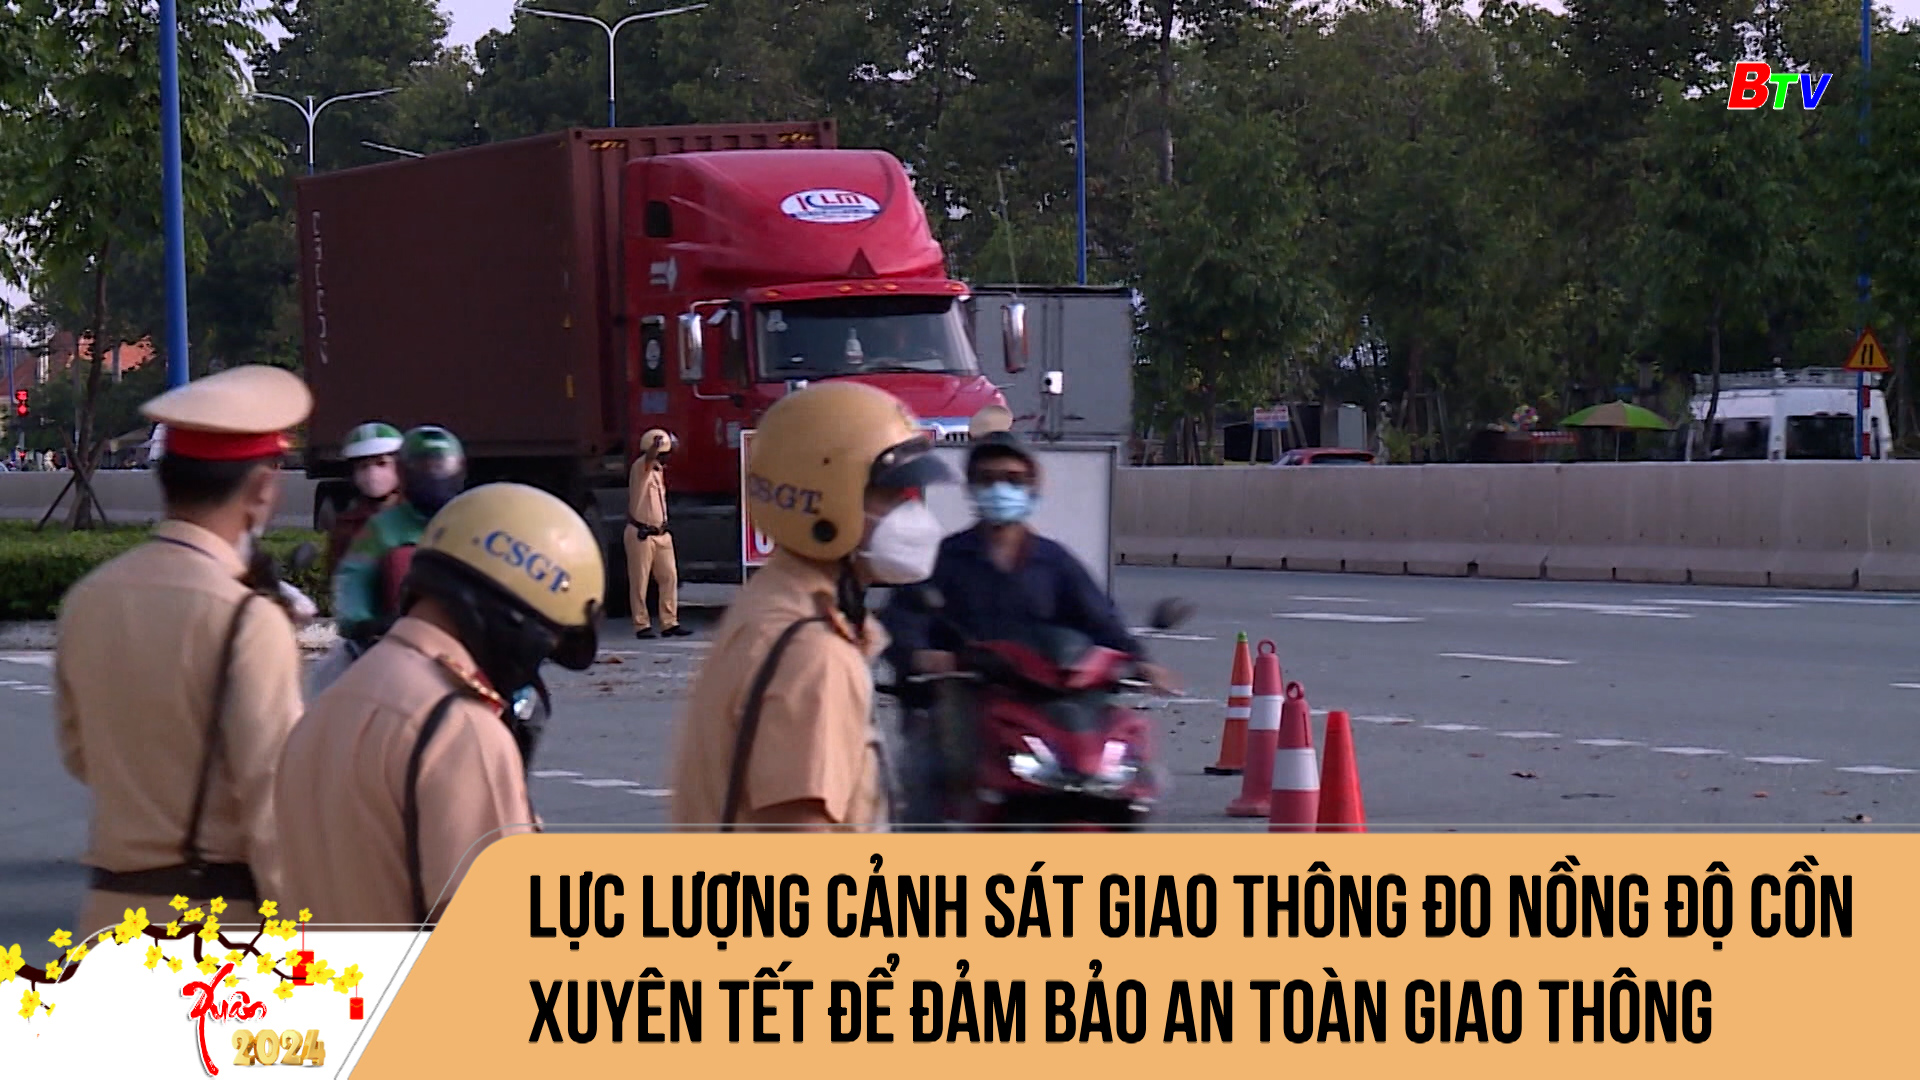 Lực lượng Cảnh sát giao thông đo nồng độ cồn xuyên Tết để đảm bảo an toàn giao thông